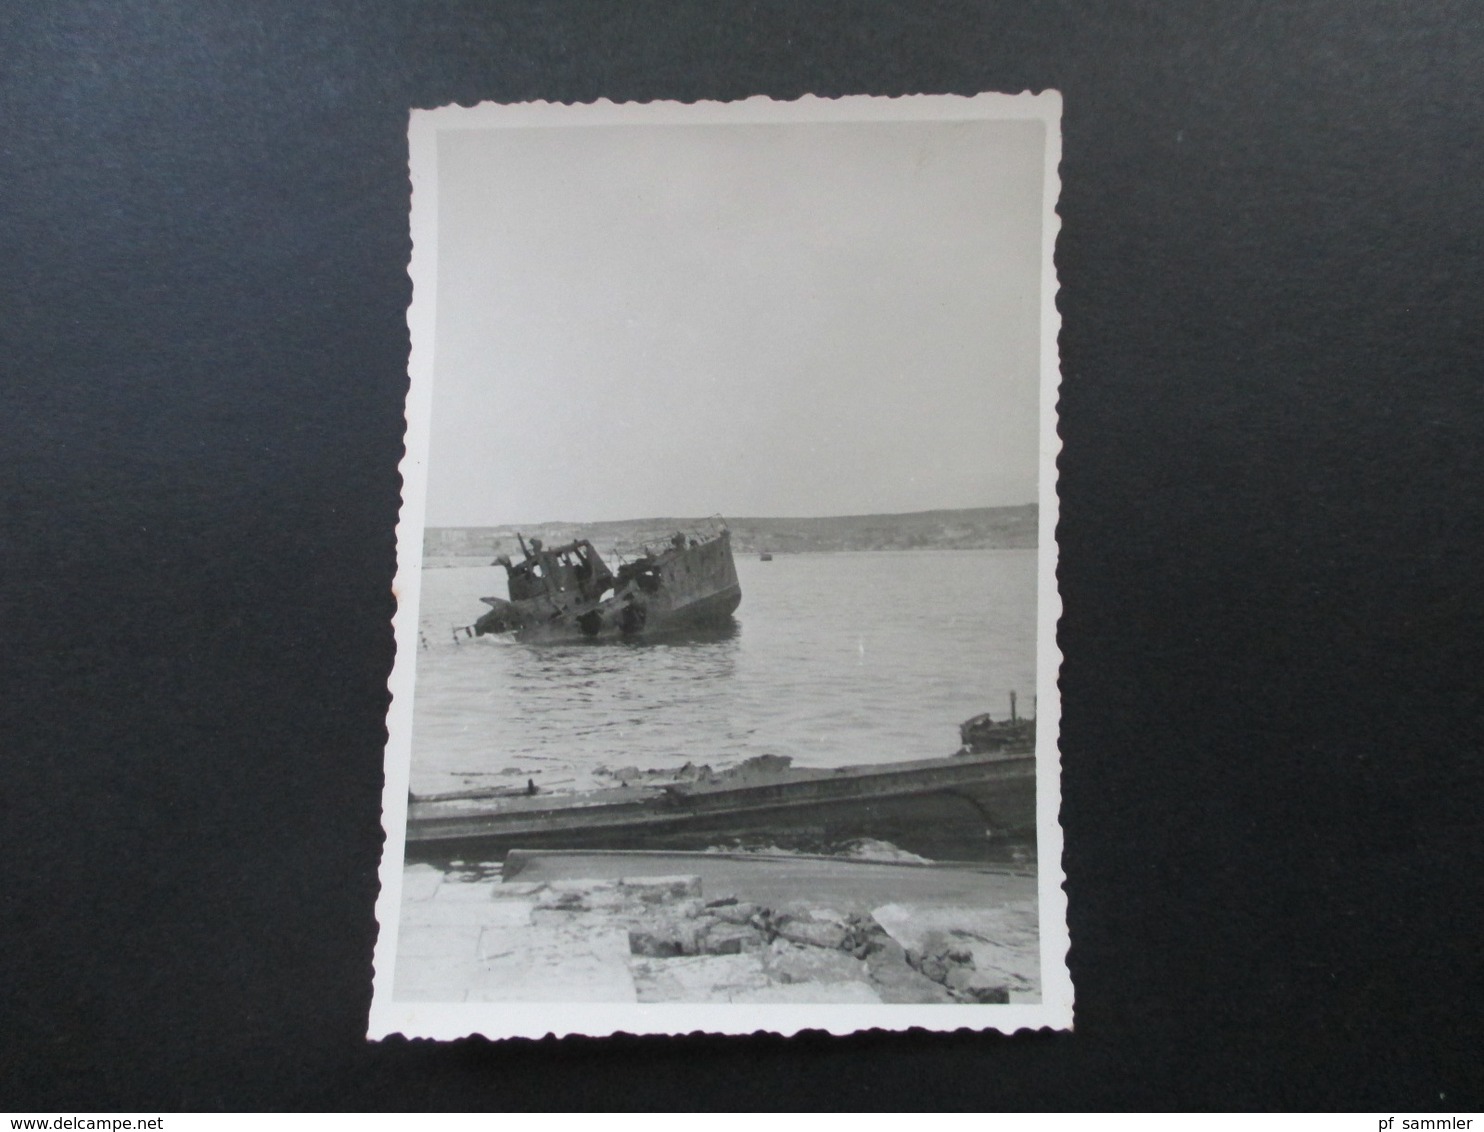 Das eroberte Sewastopol 1942 versenkte Kriegschiffe / Militärparade / Schiffe / Fahrzeuge Wehrmacht! Krim / Ukraine